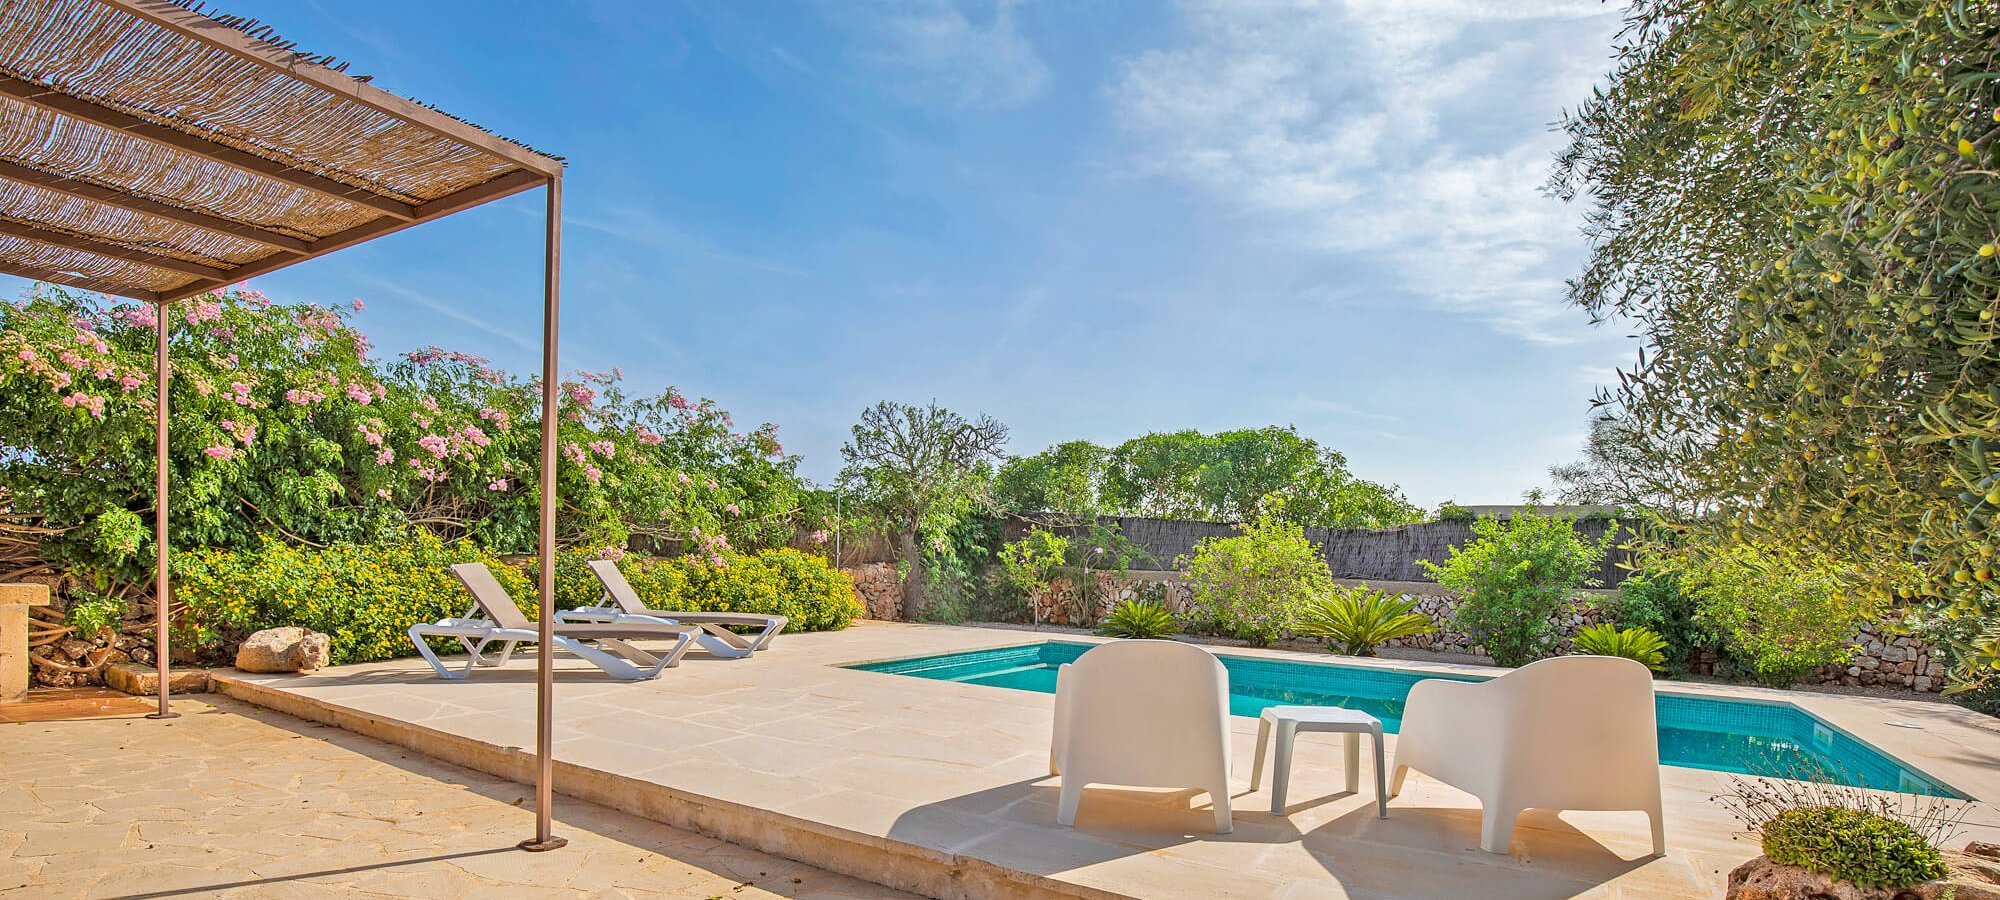 Ferienhaus Mallorca für 2 Personen mit Pool